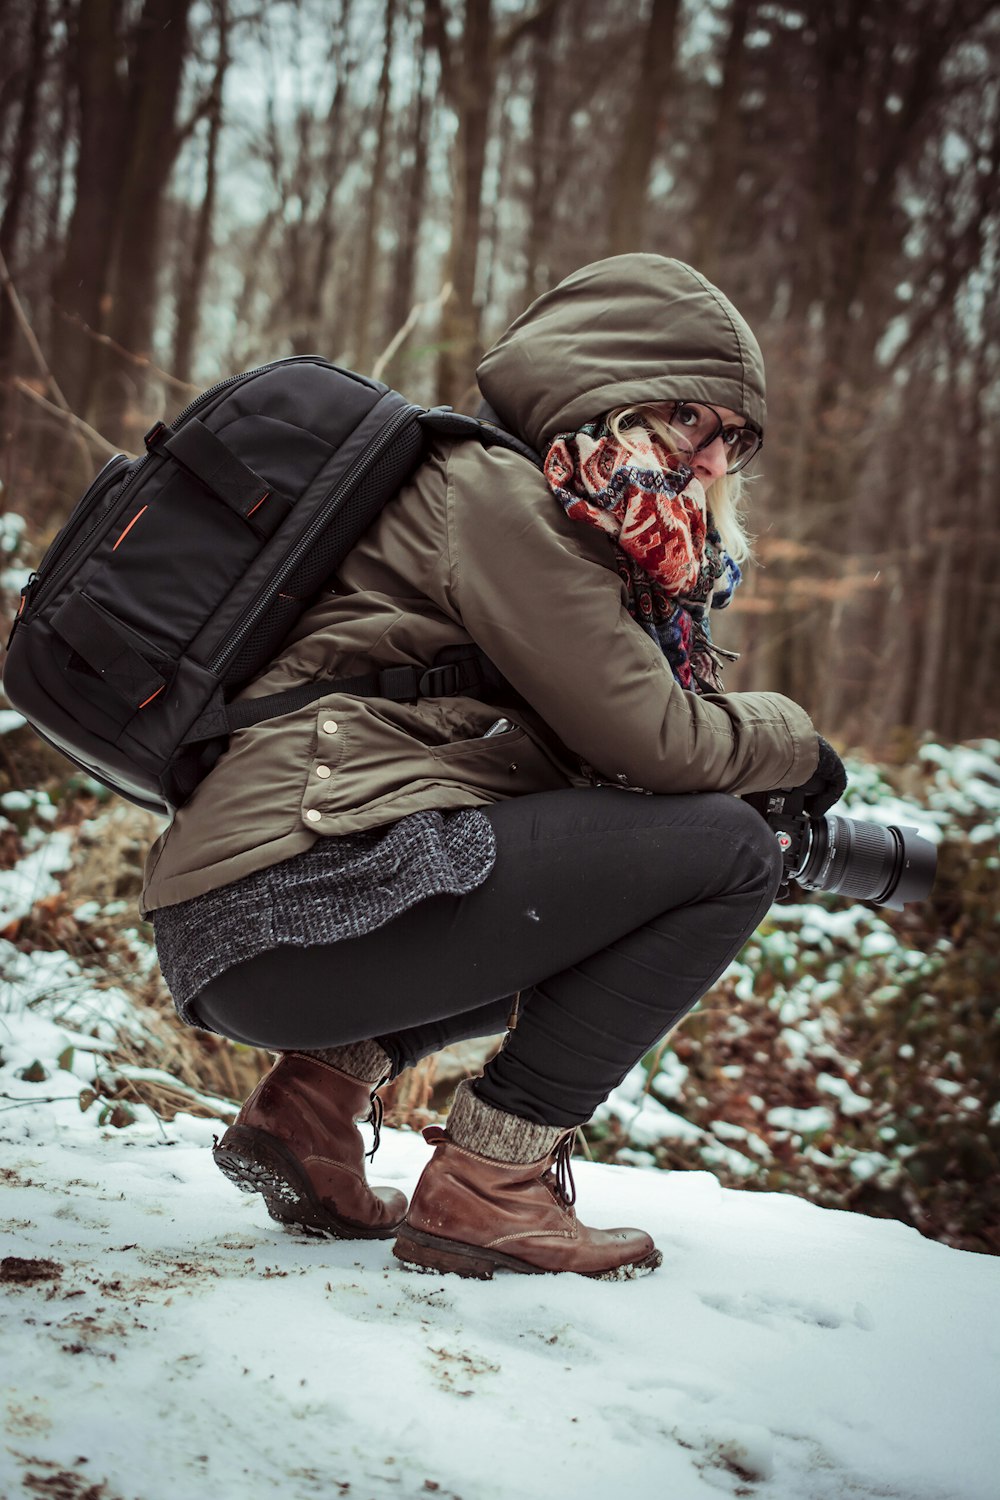 mulher na jaqueta marrom com capuz segurando a câmera enquanto se agacha no chão coberto de neve durante o dia